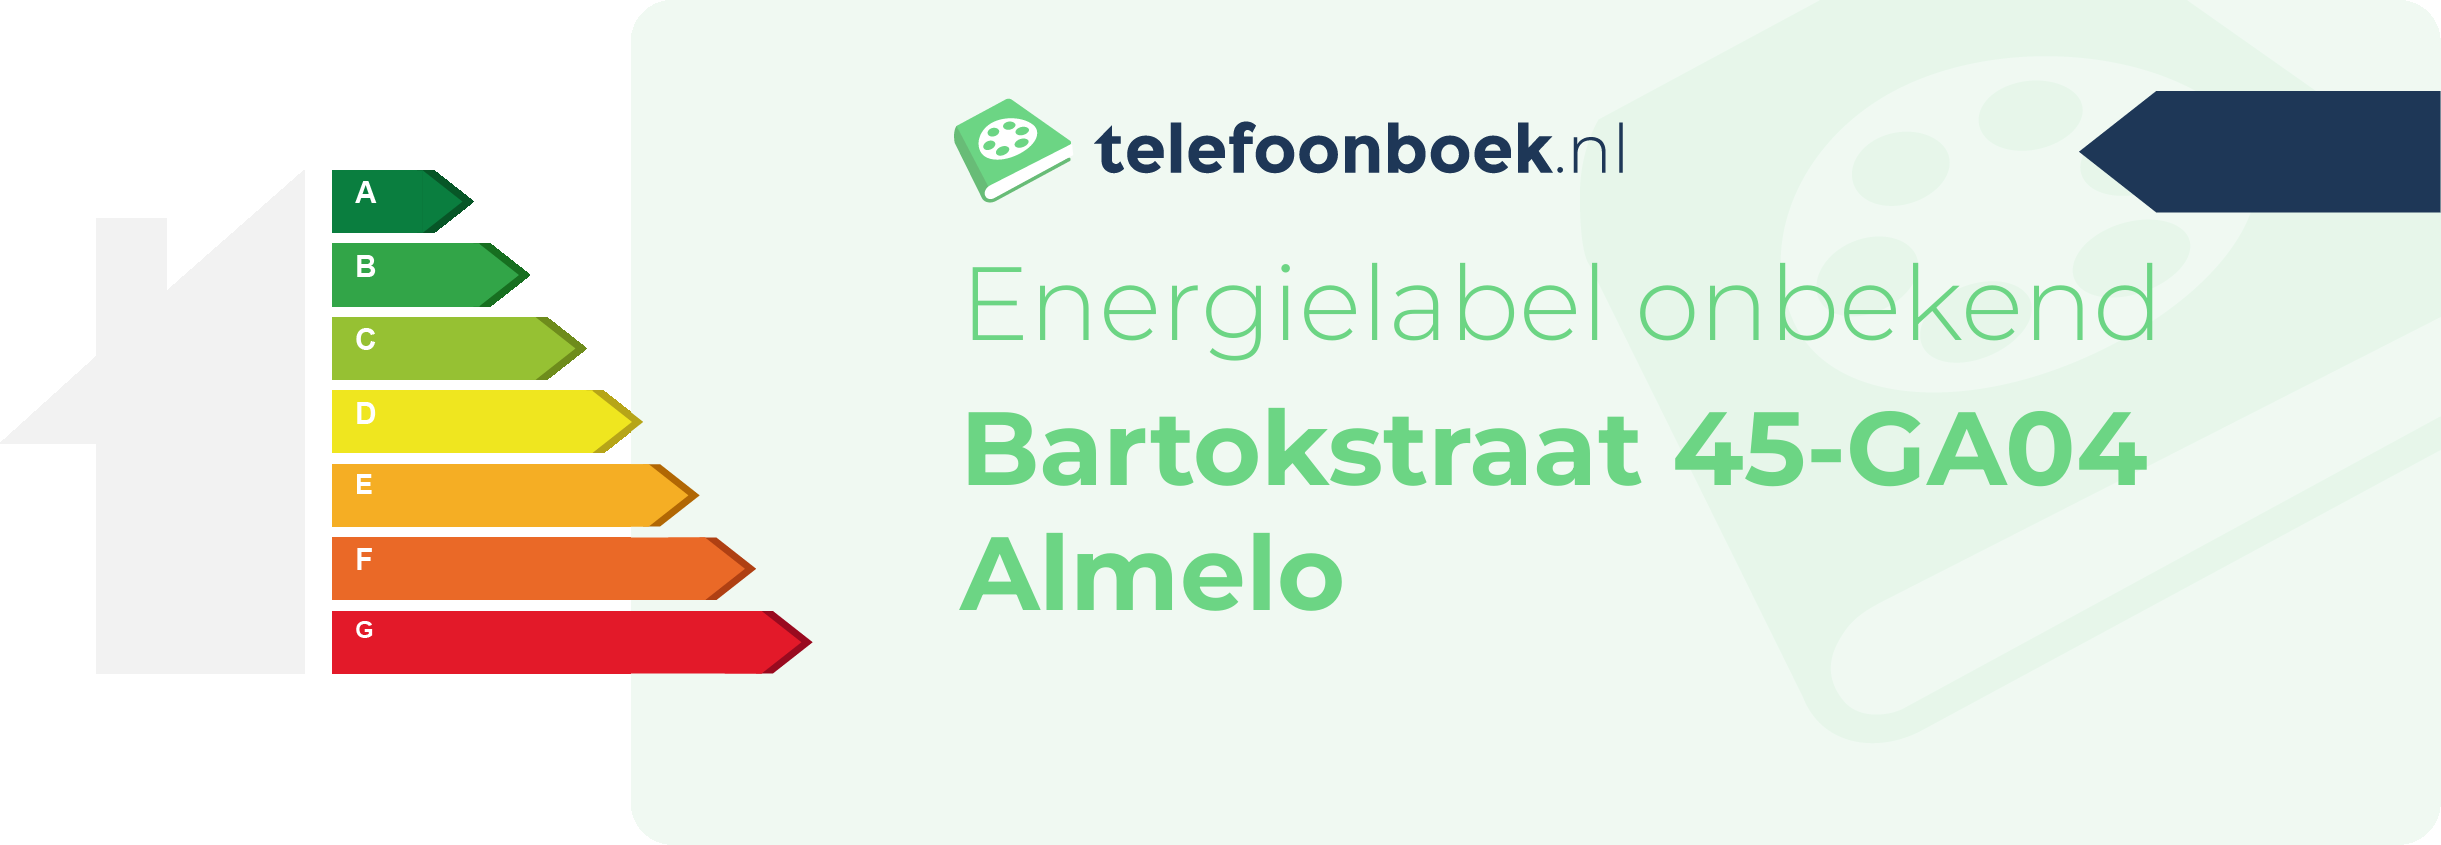 Energielabel Bartokstraat 45-GA04 Almelo